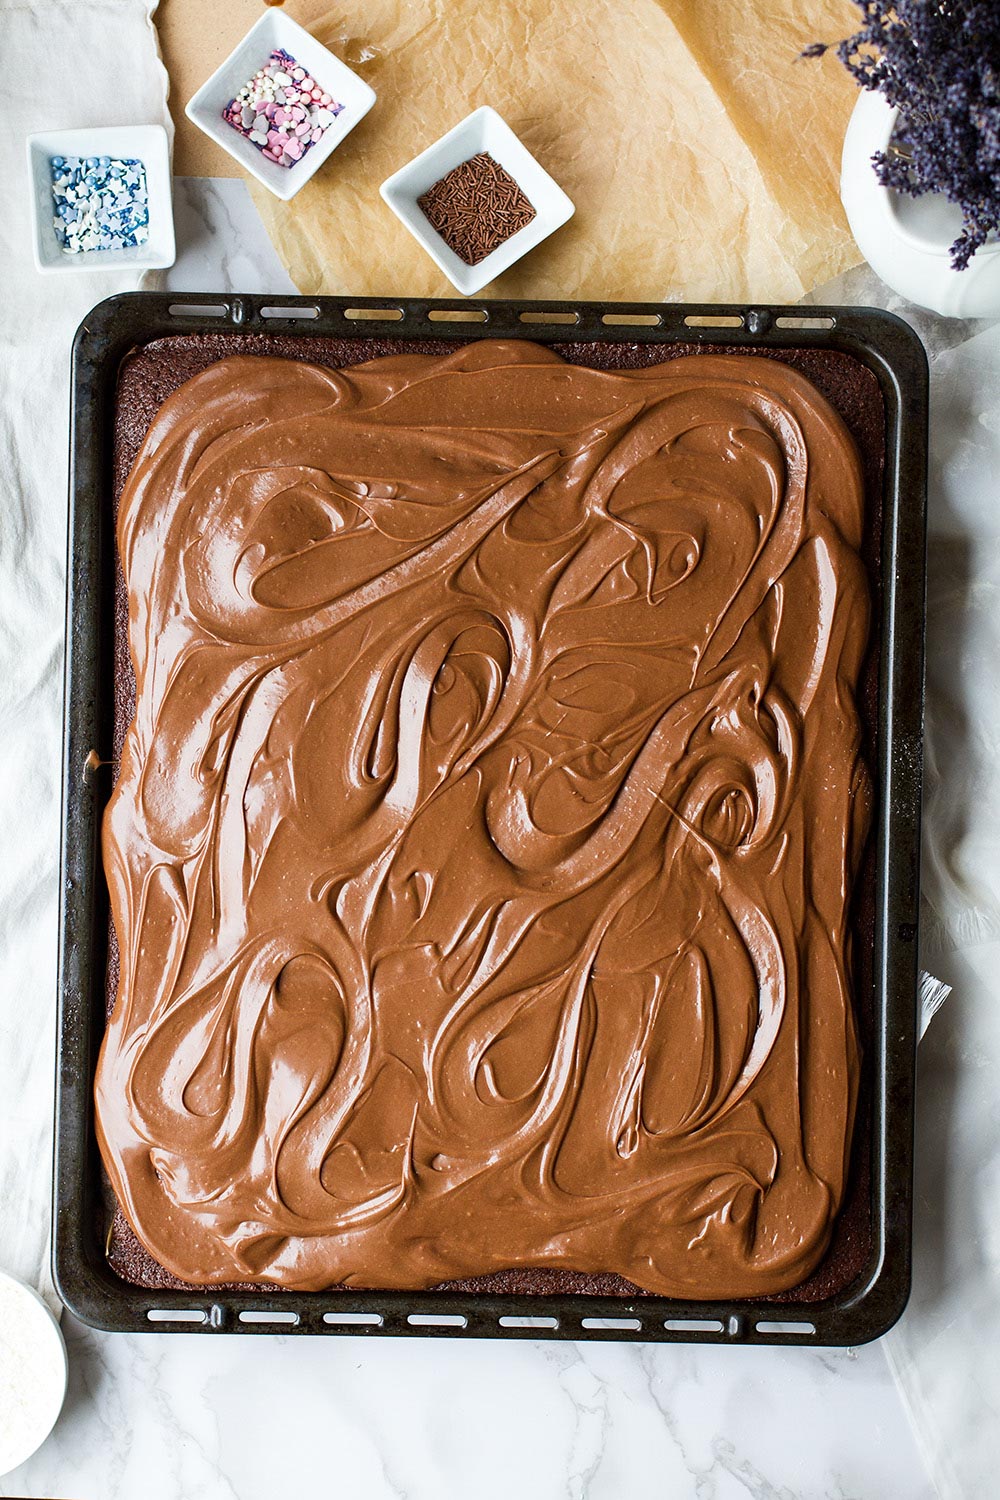 Chocolate cake in a large sheet pan.